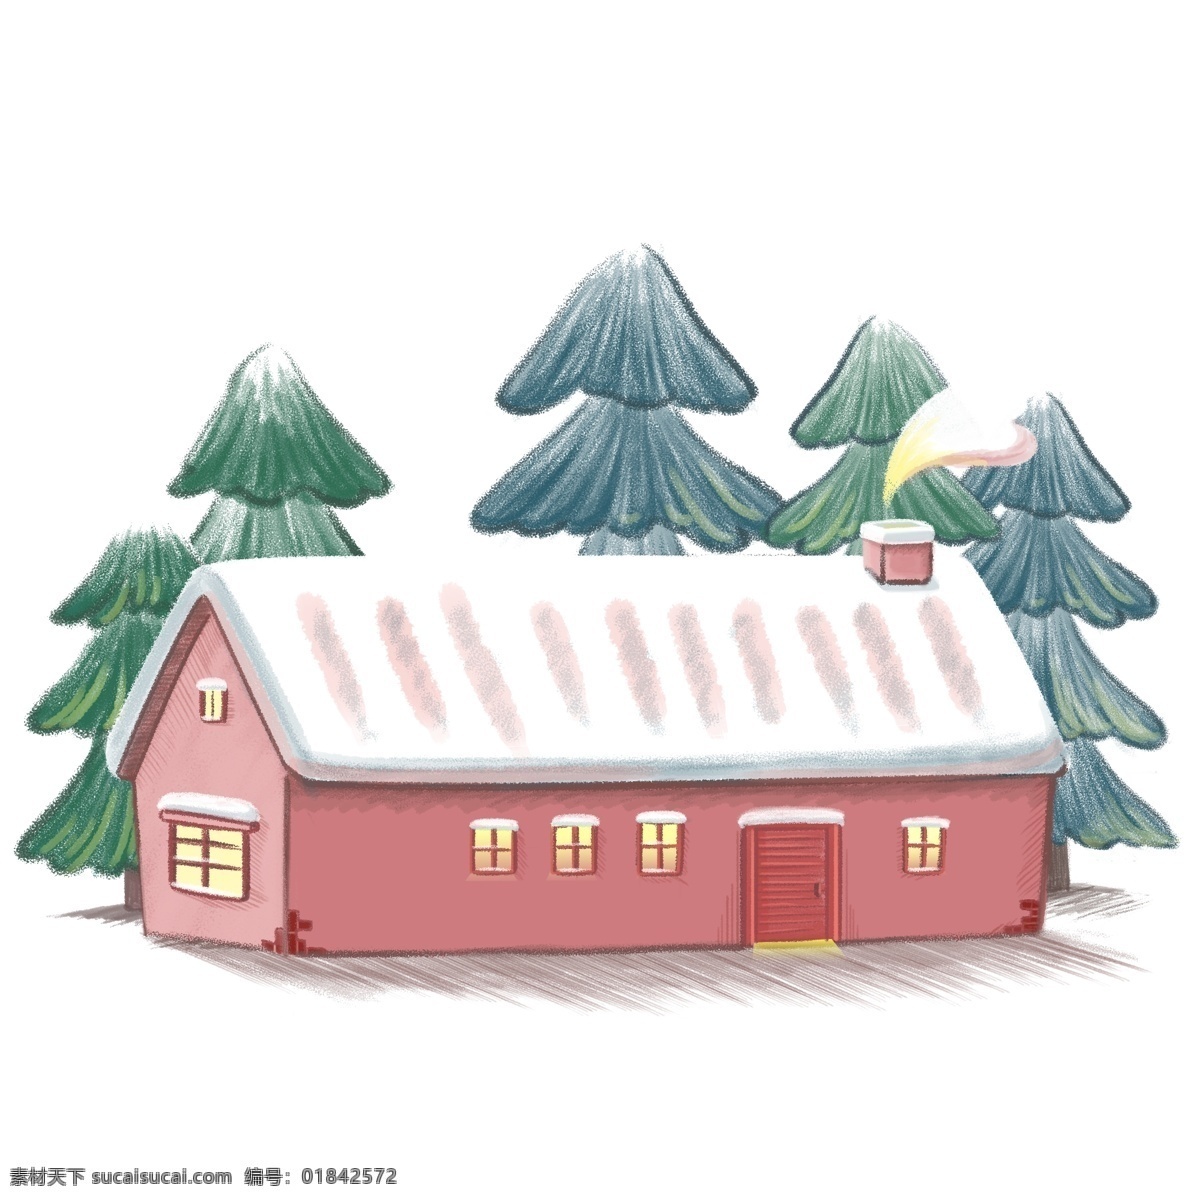 童话 风 林中 积雪 小屋 松树 冬天 雪景 温馨 小房子 冬日 手绘风 烟囱 屋子